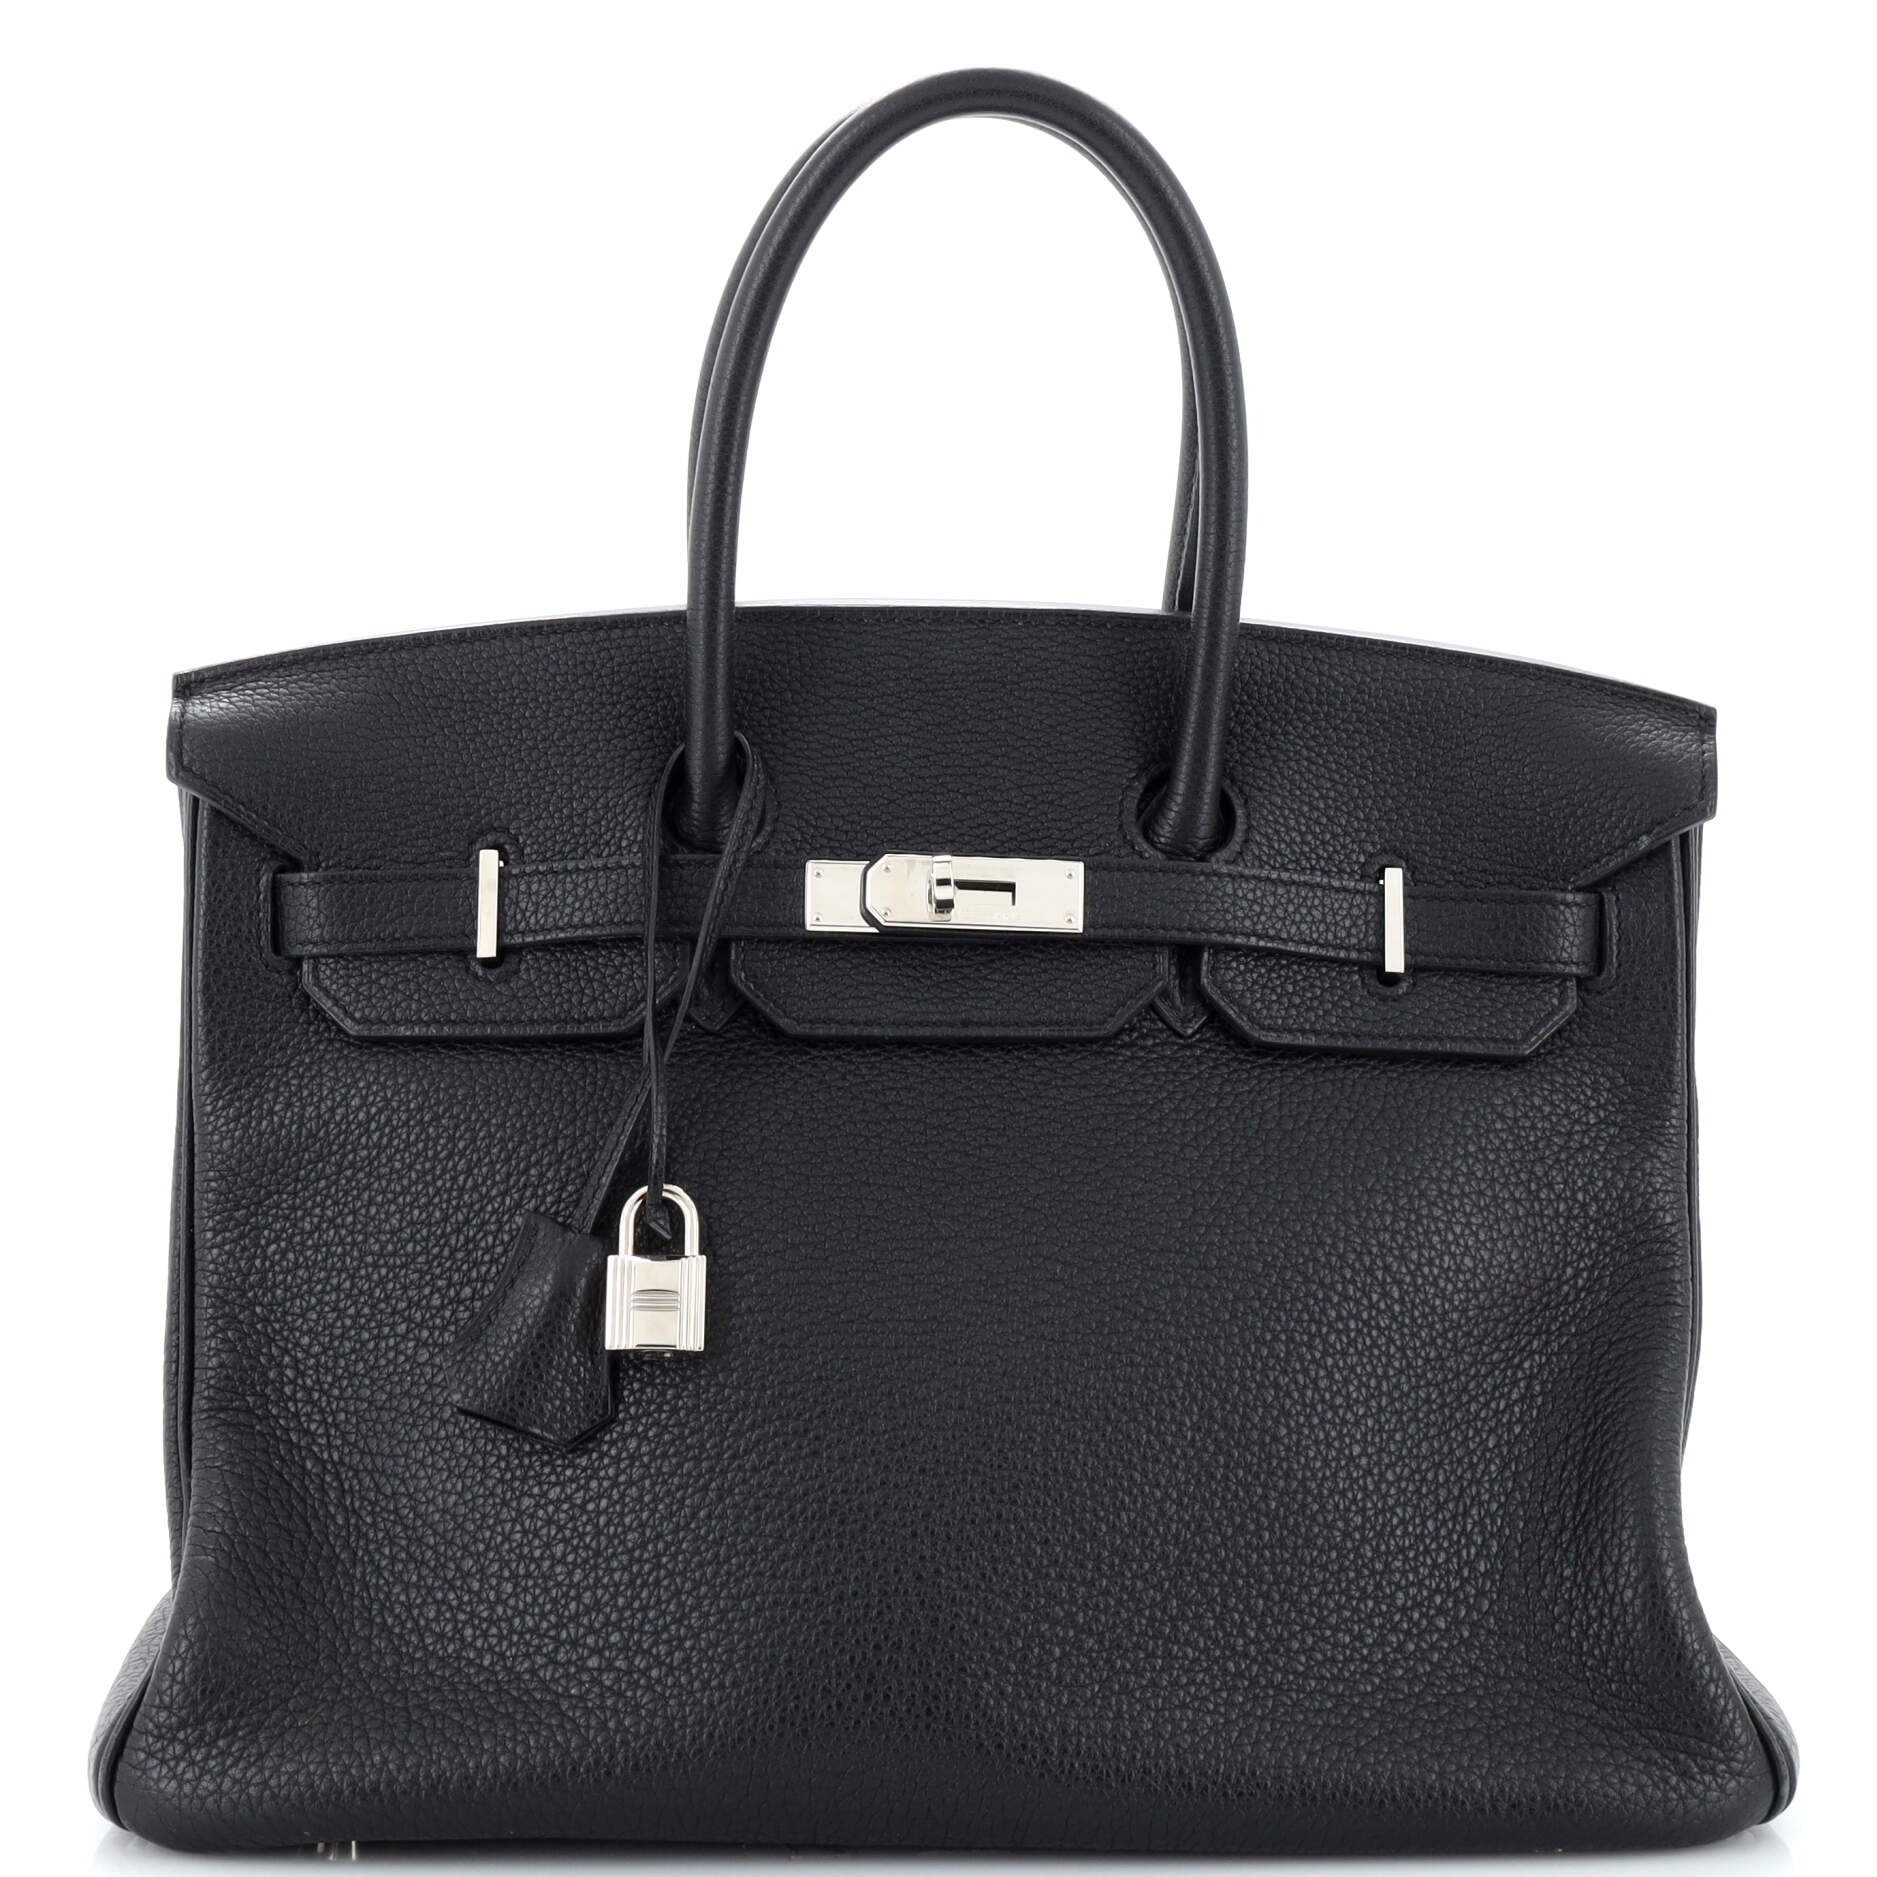 Birkin Handbag Noir Togo with Palladium Hardware 35